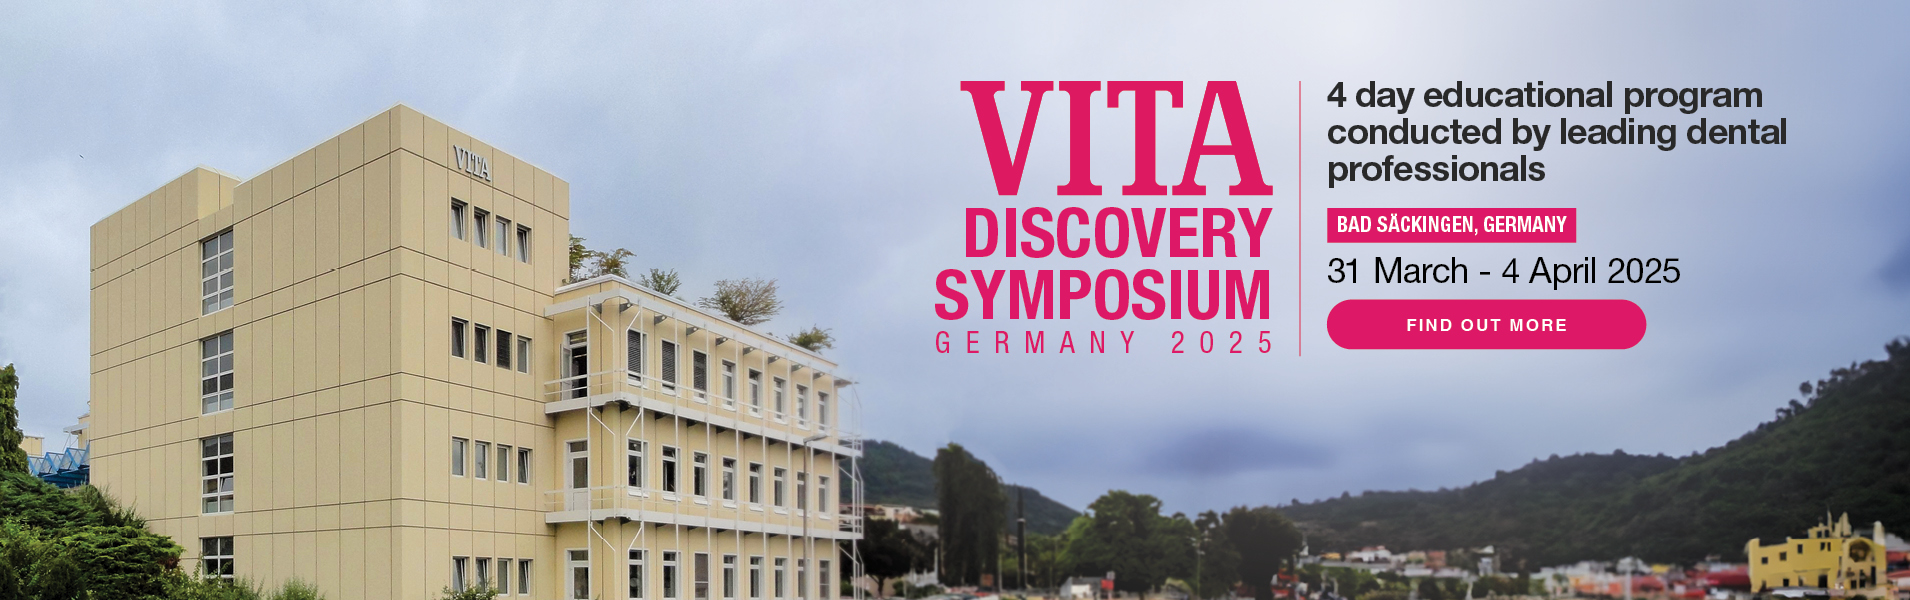 Vita Symposium